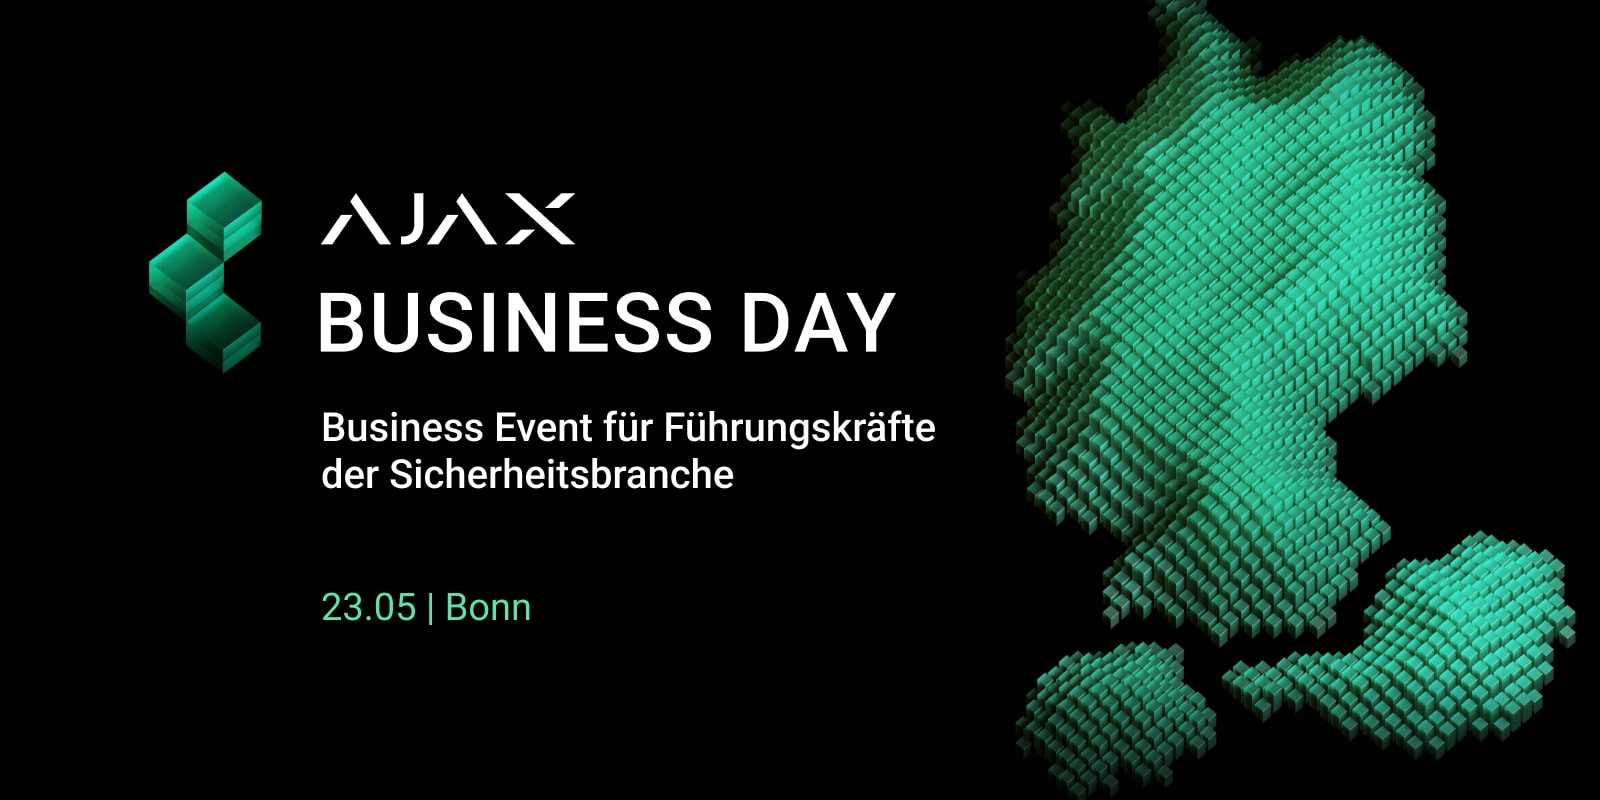 Auf dem Ajax Business Day beraten sich Führungskräfte der Sicherheitsbranche am 23. Mai über zukunftsweisende Geschäftsstrategien im DACH-Markt.